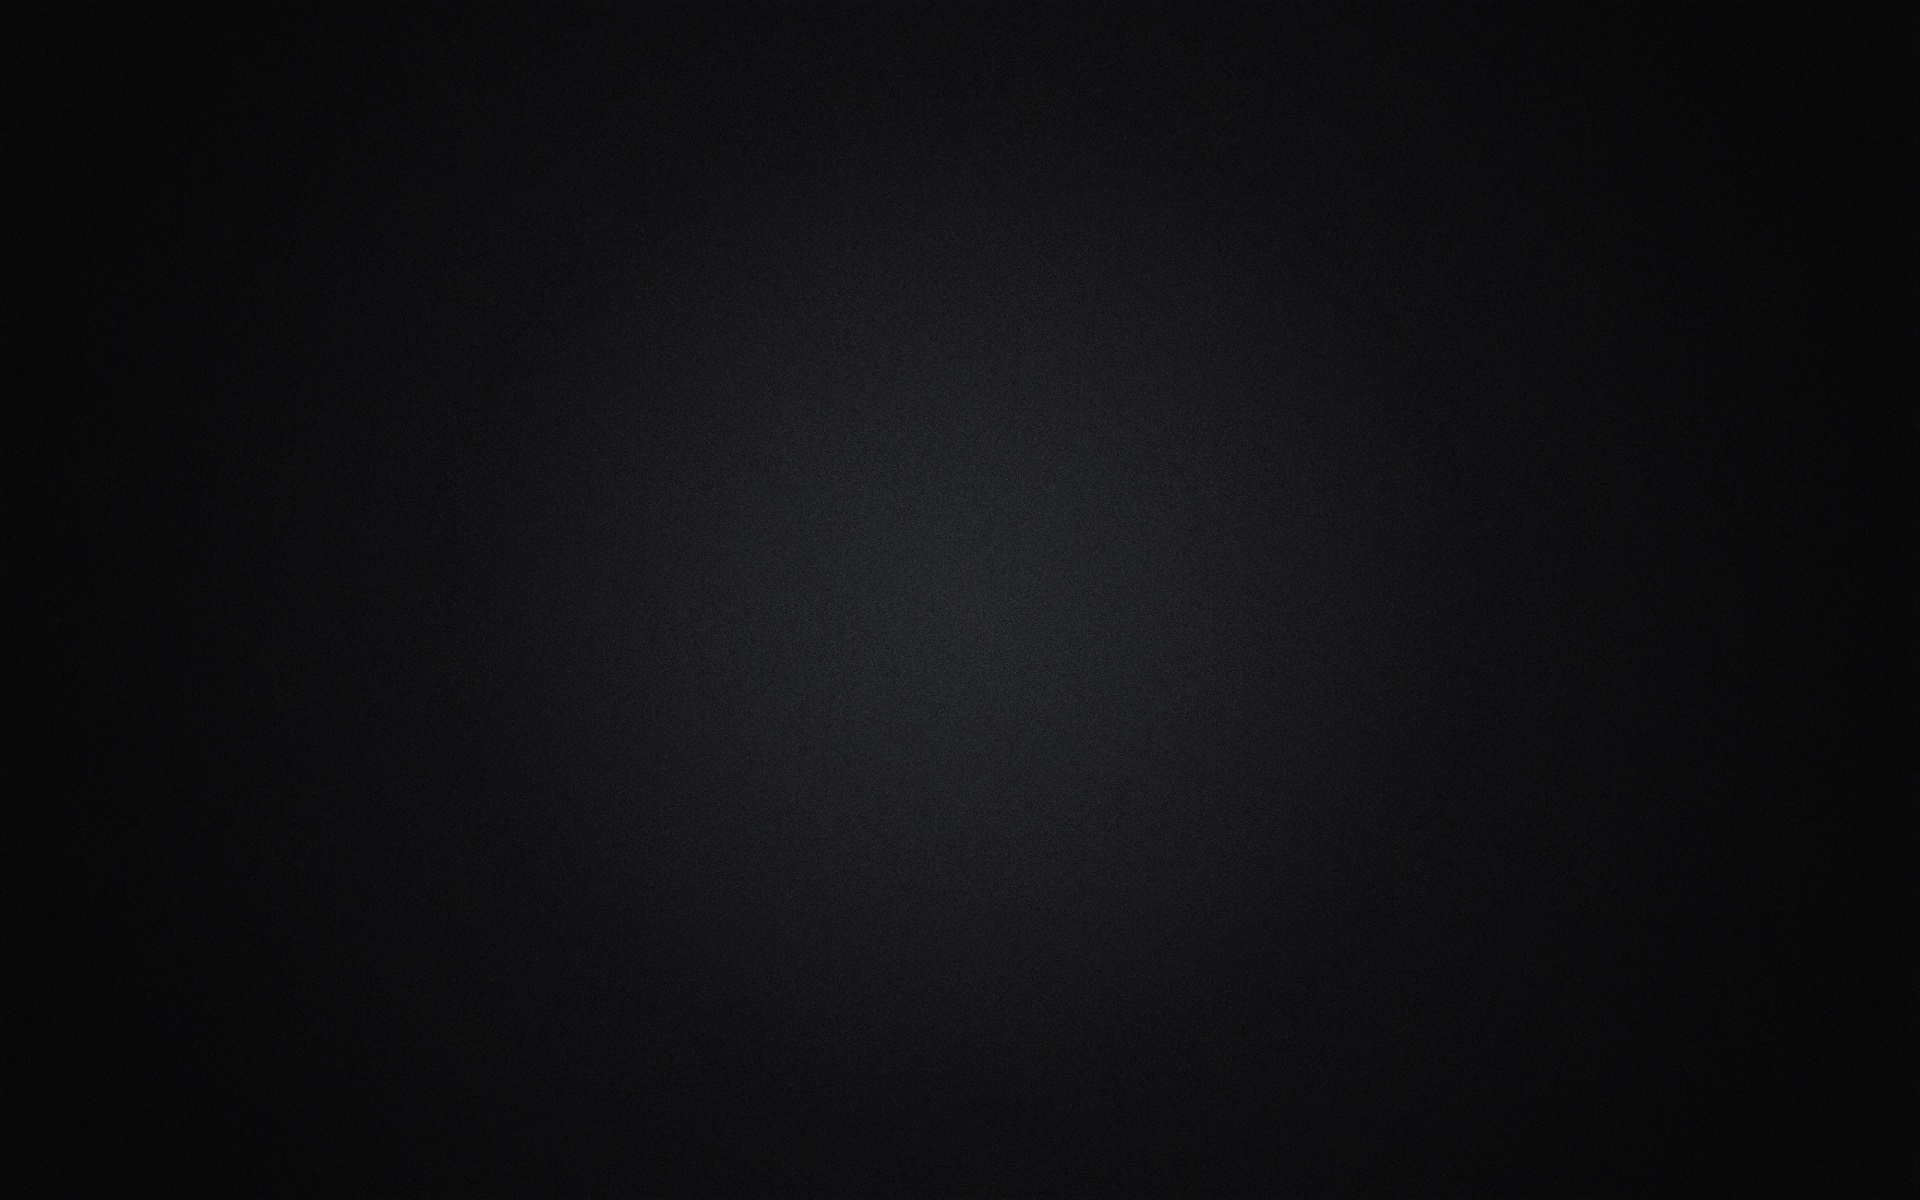 Rx черный экран. Черный фон. Черный цвет фон. Черный фон пустой. Красивый черный фон для фотошопа.